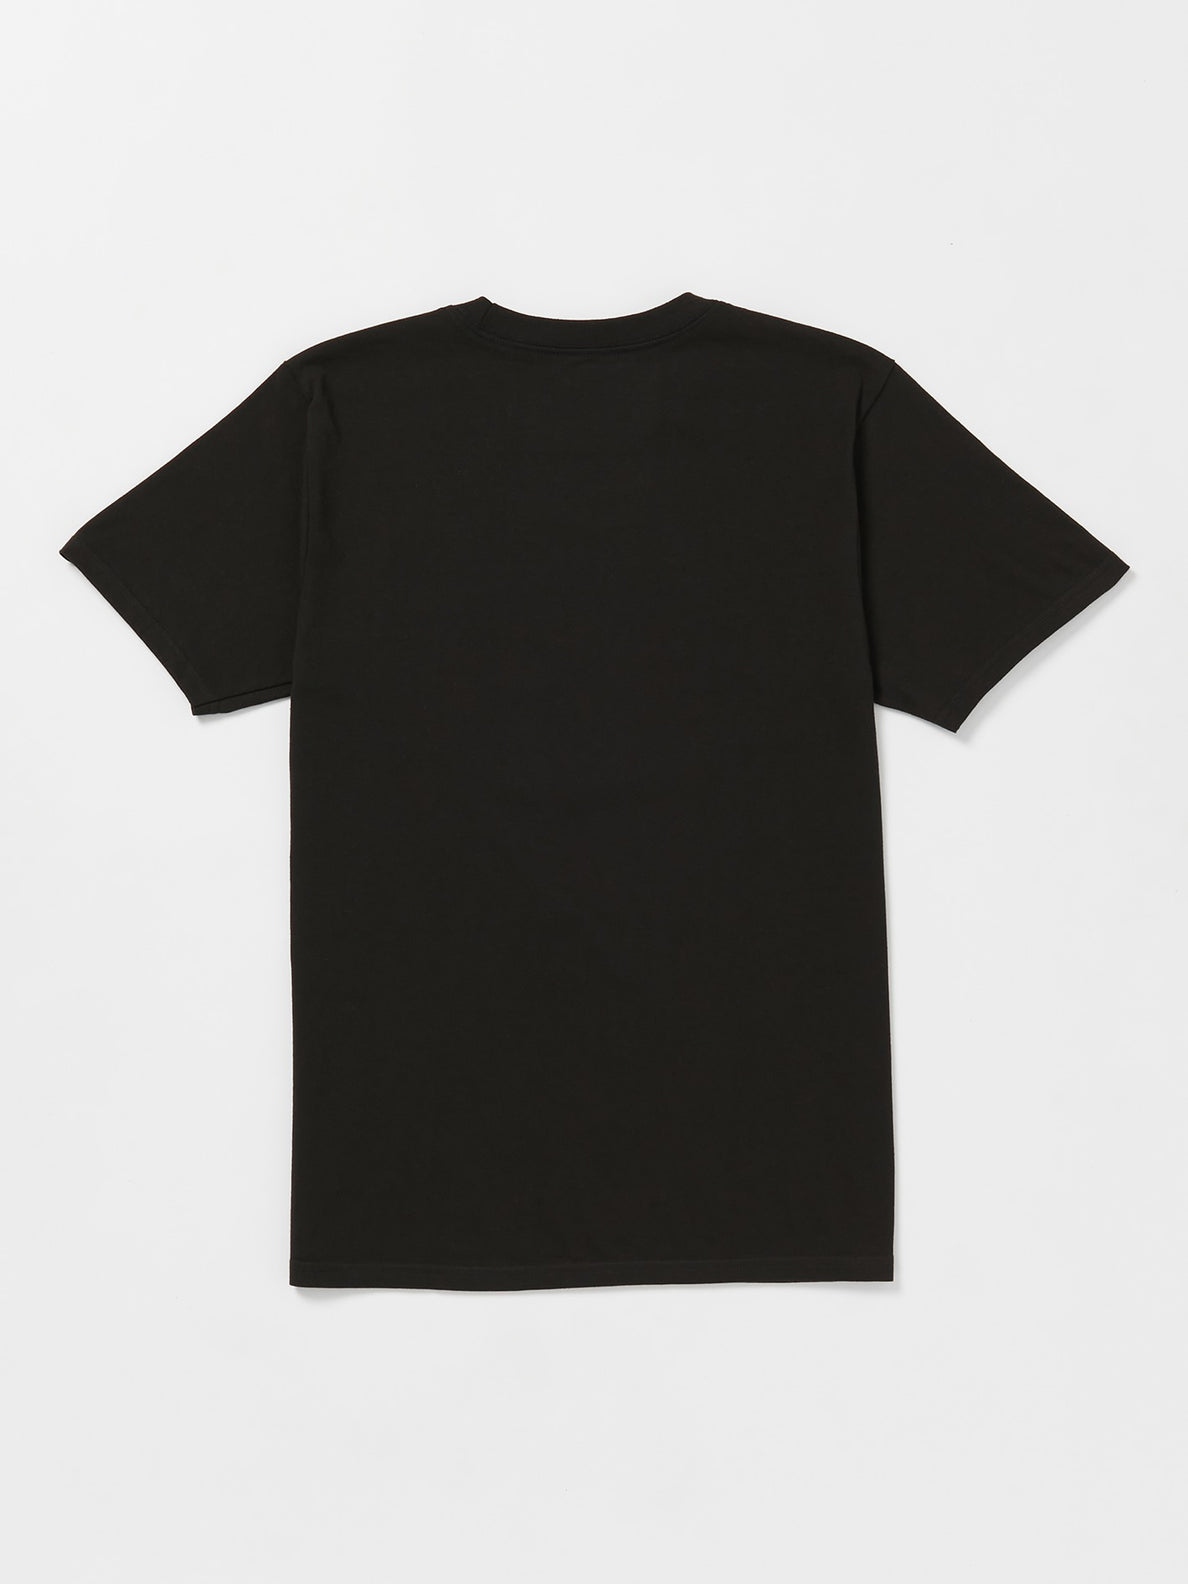 Puddle Short Sleeve T-Shirt - Black